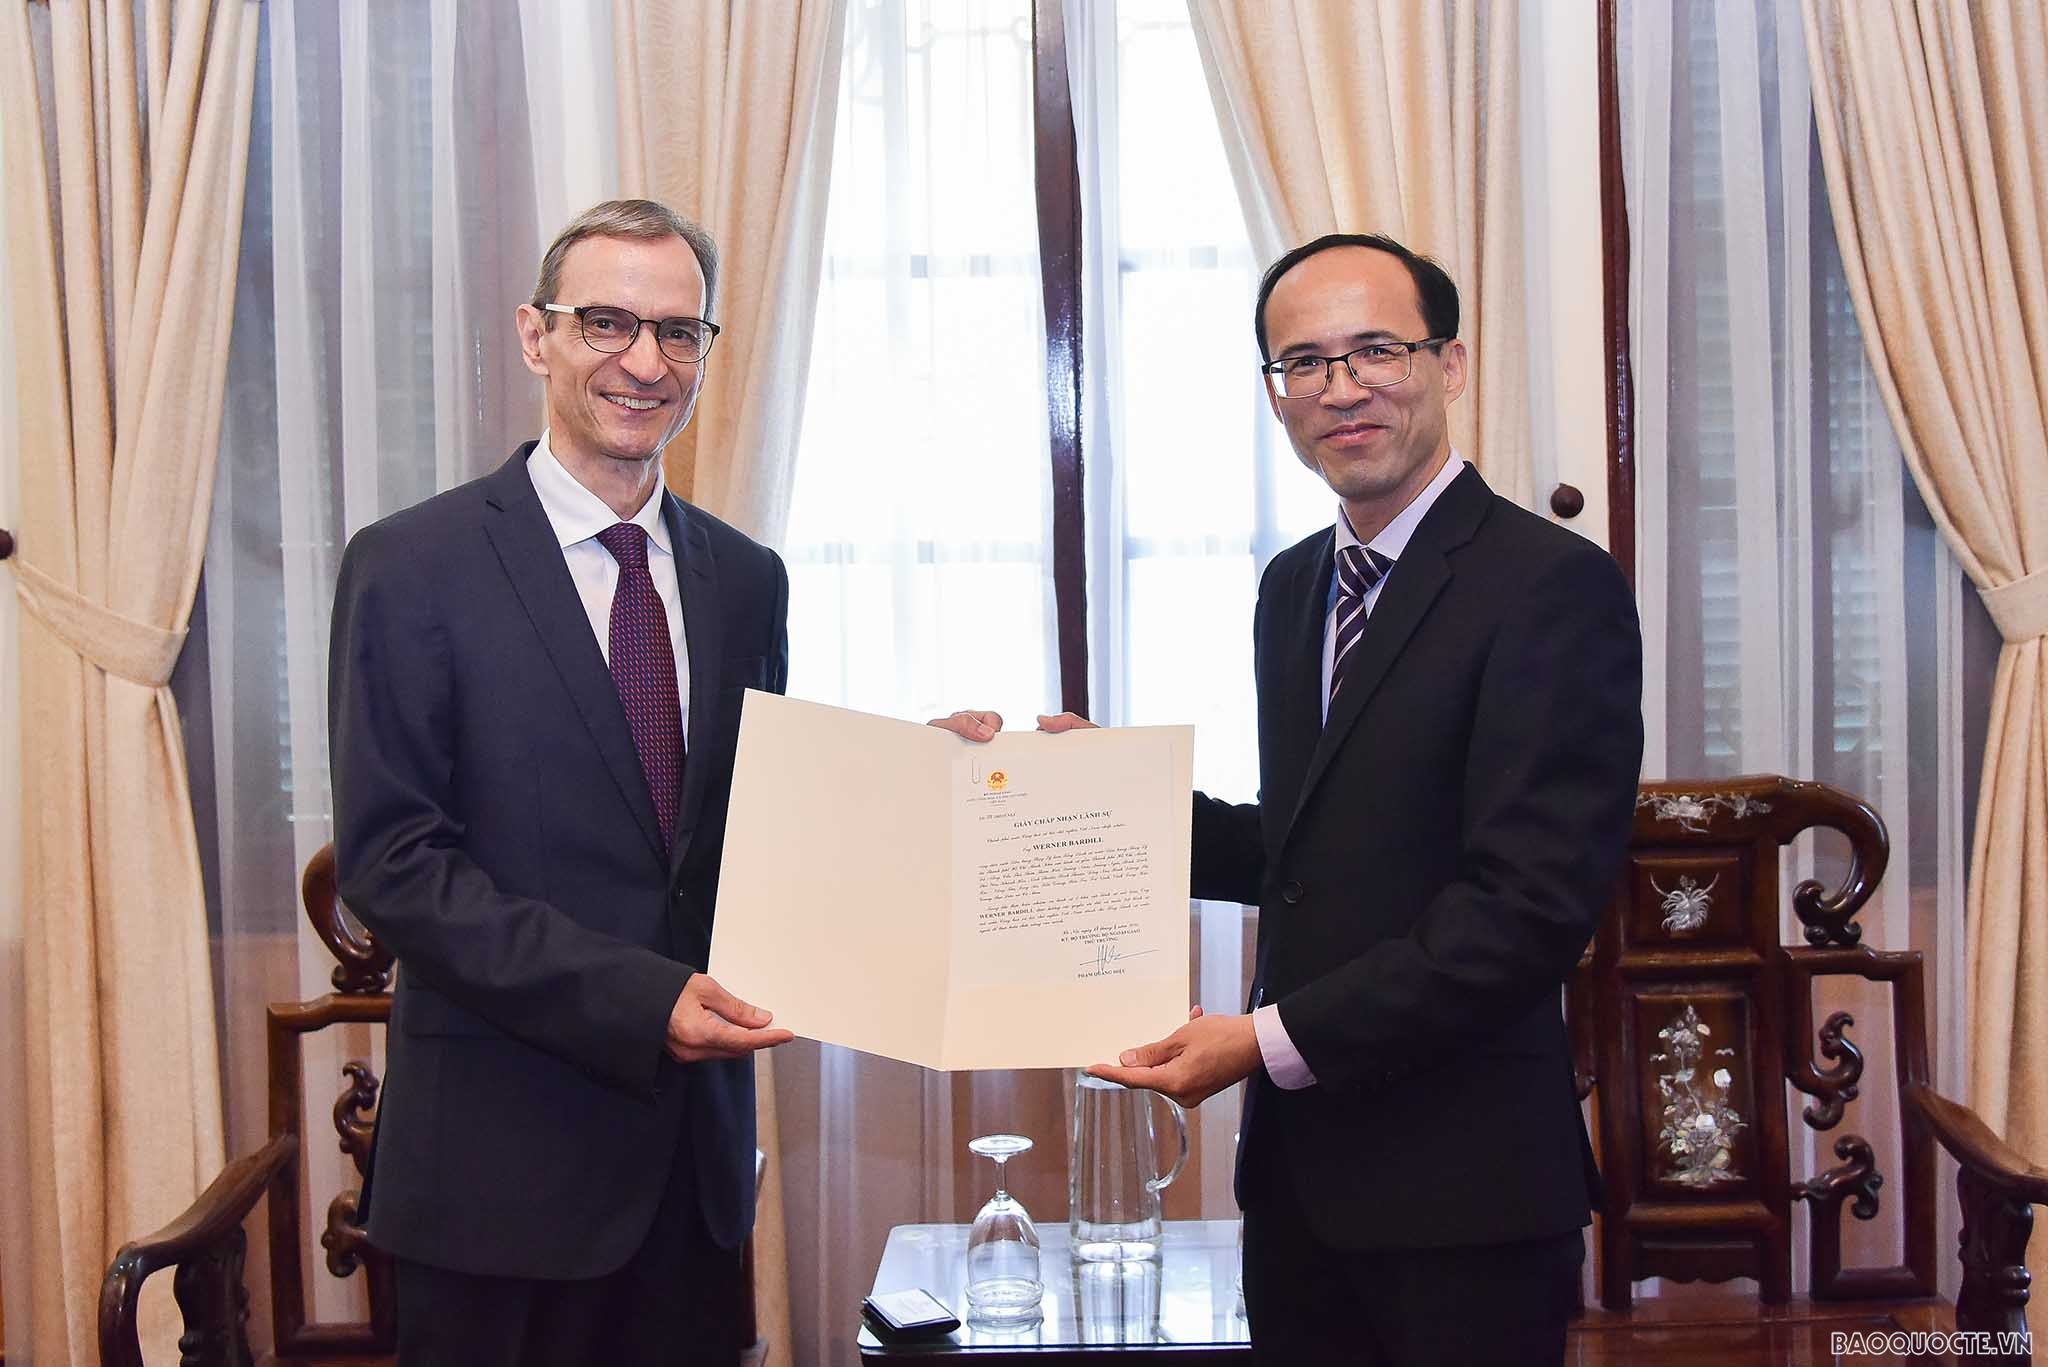 Trao Giấy chấp nhận lãnh sự cho Tổng Lãnh sự Thụy Sỹ tại TP. Hồ Chí Minh